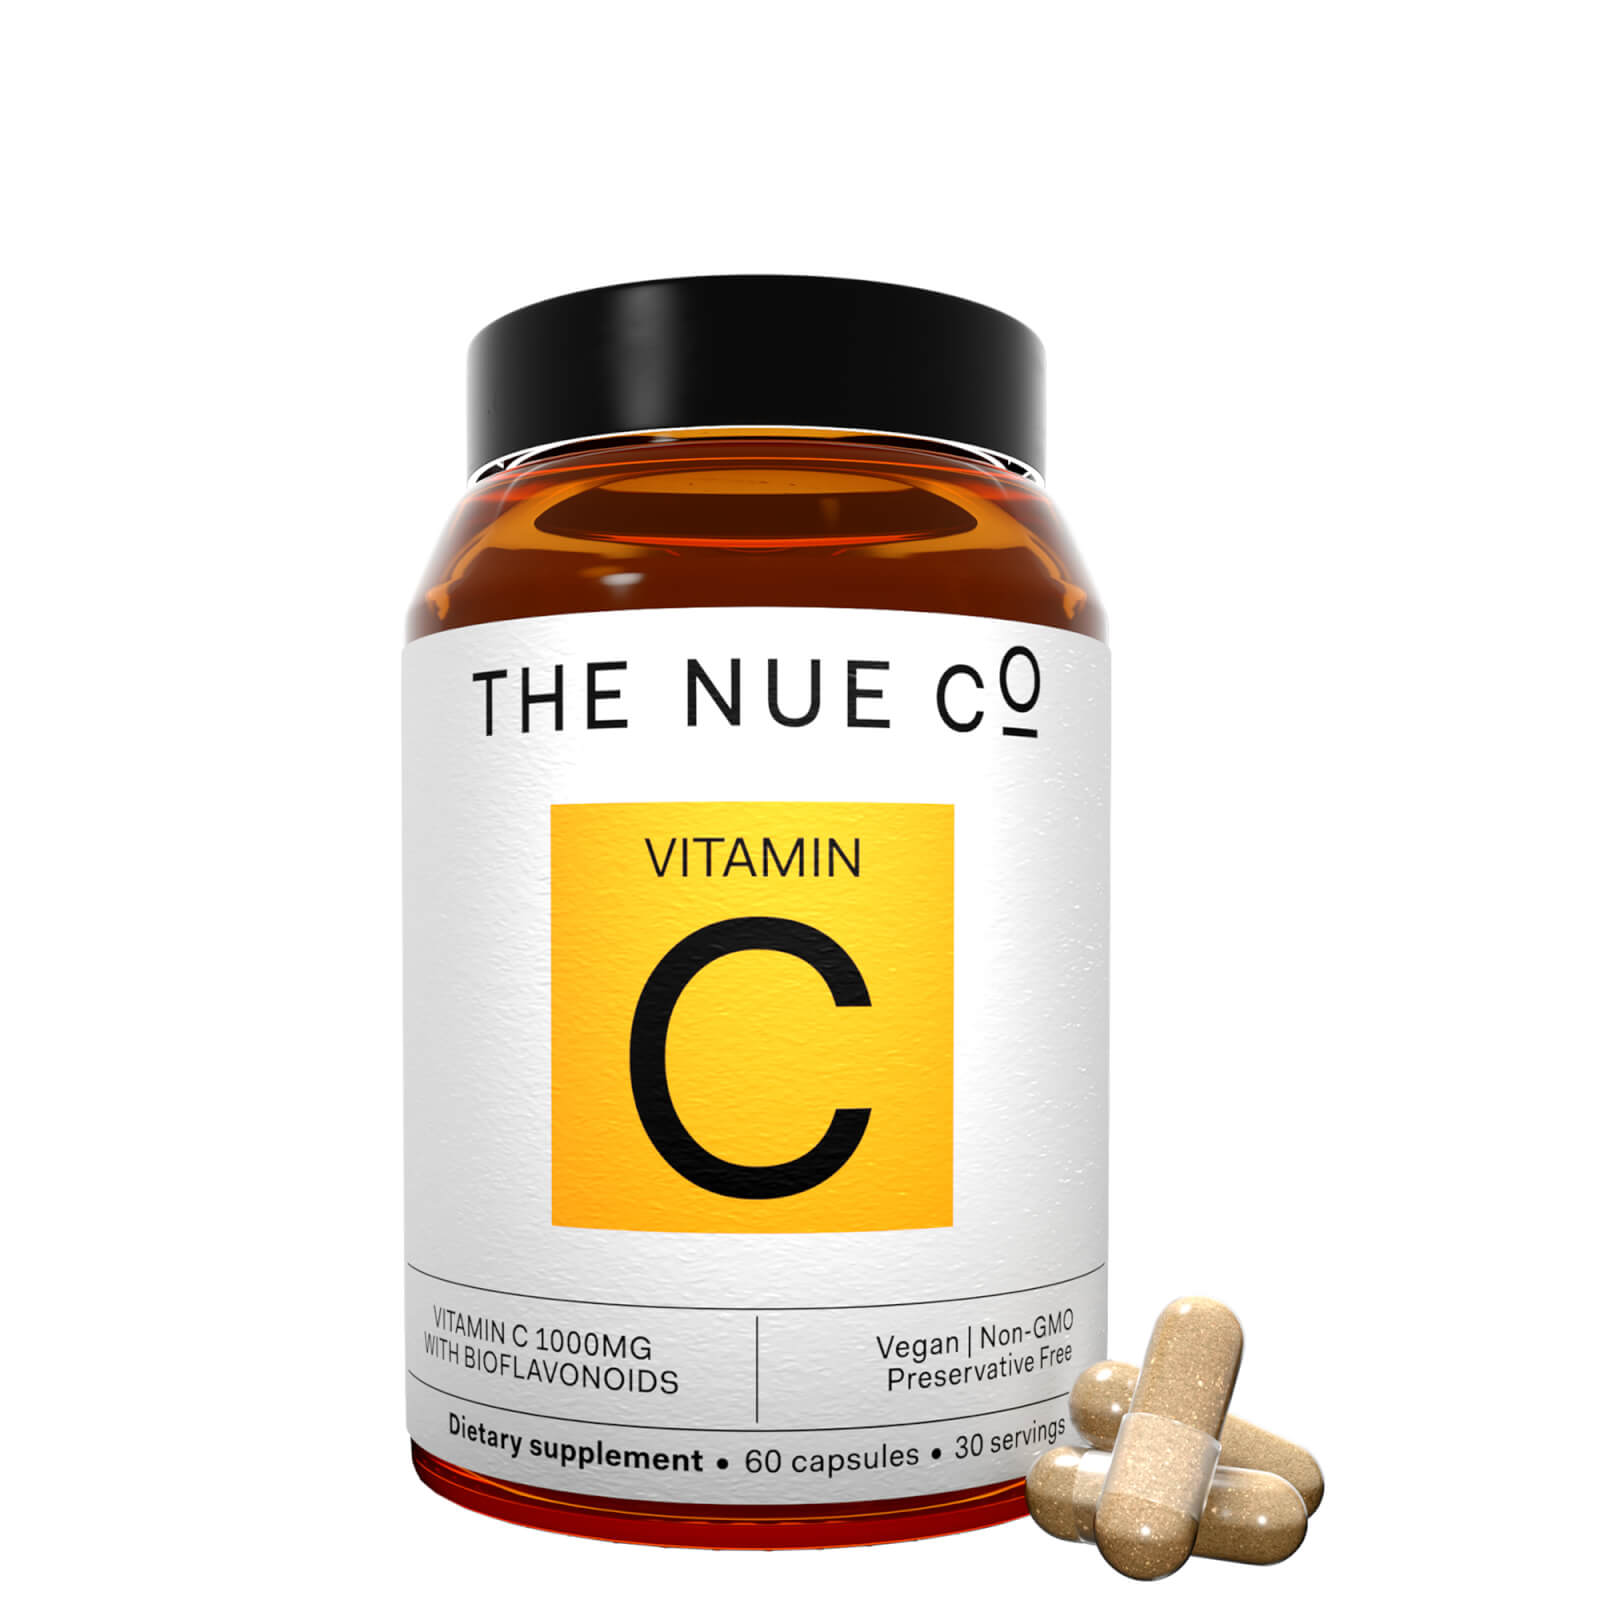 The Nue Co. Vitamin C Capsules (60 Capsules) In White